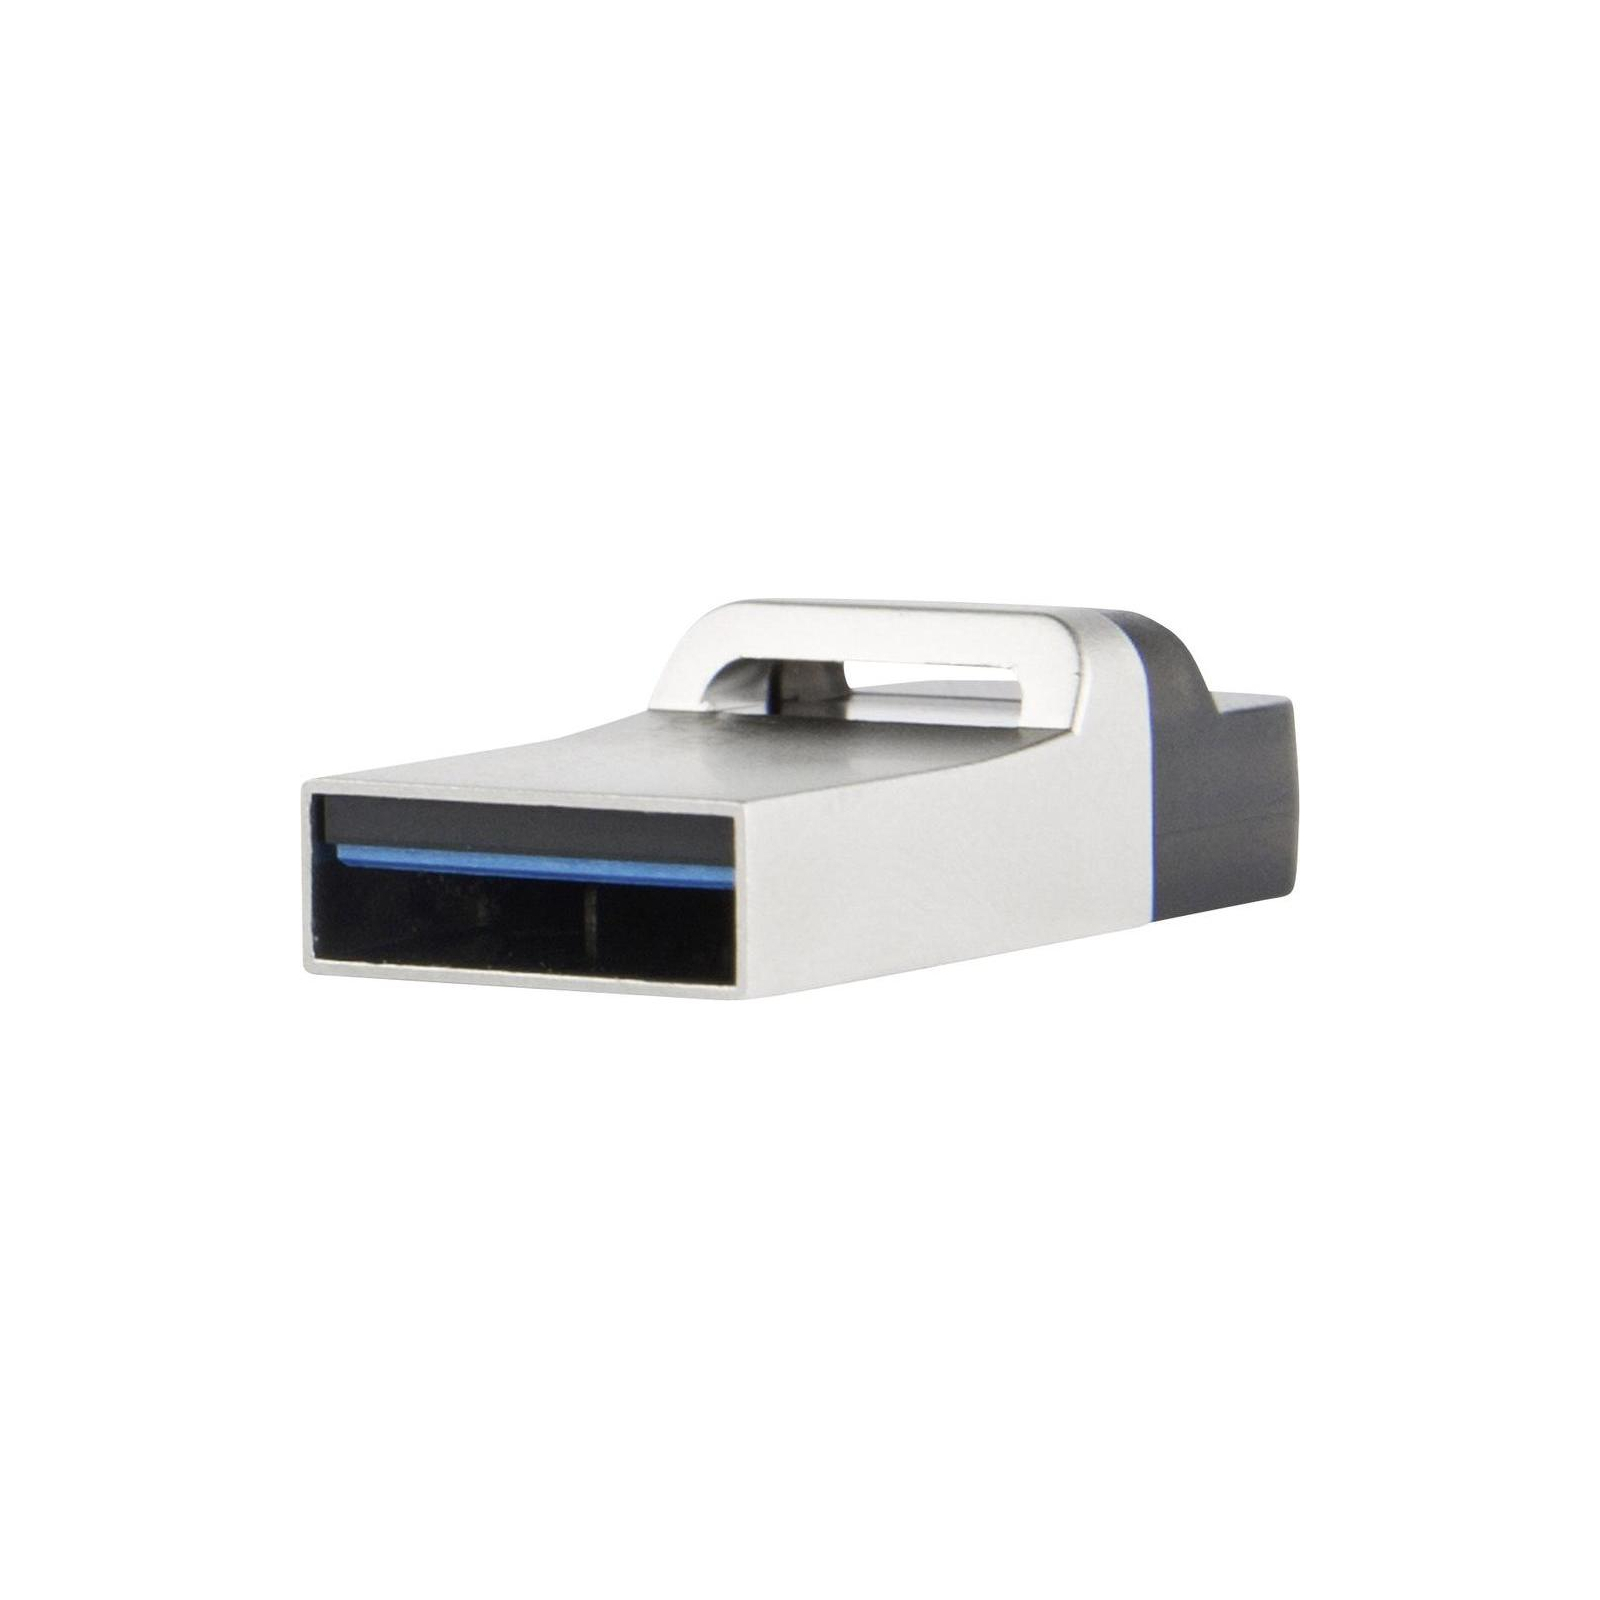 USB флеш накопичувач Transcend 16GB JetFlash OTG 880 Metal Silver USB 3.0 (TS16GJF880S) зображення 4